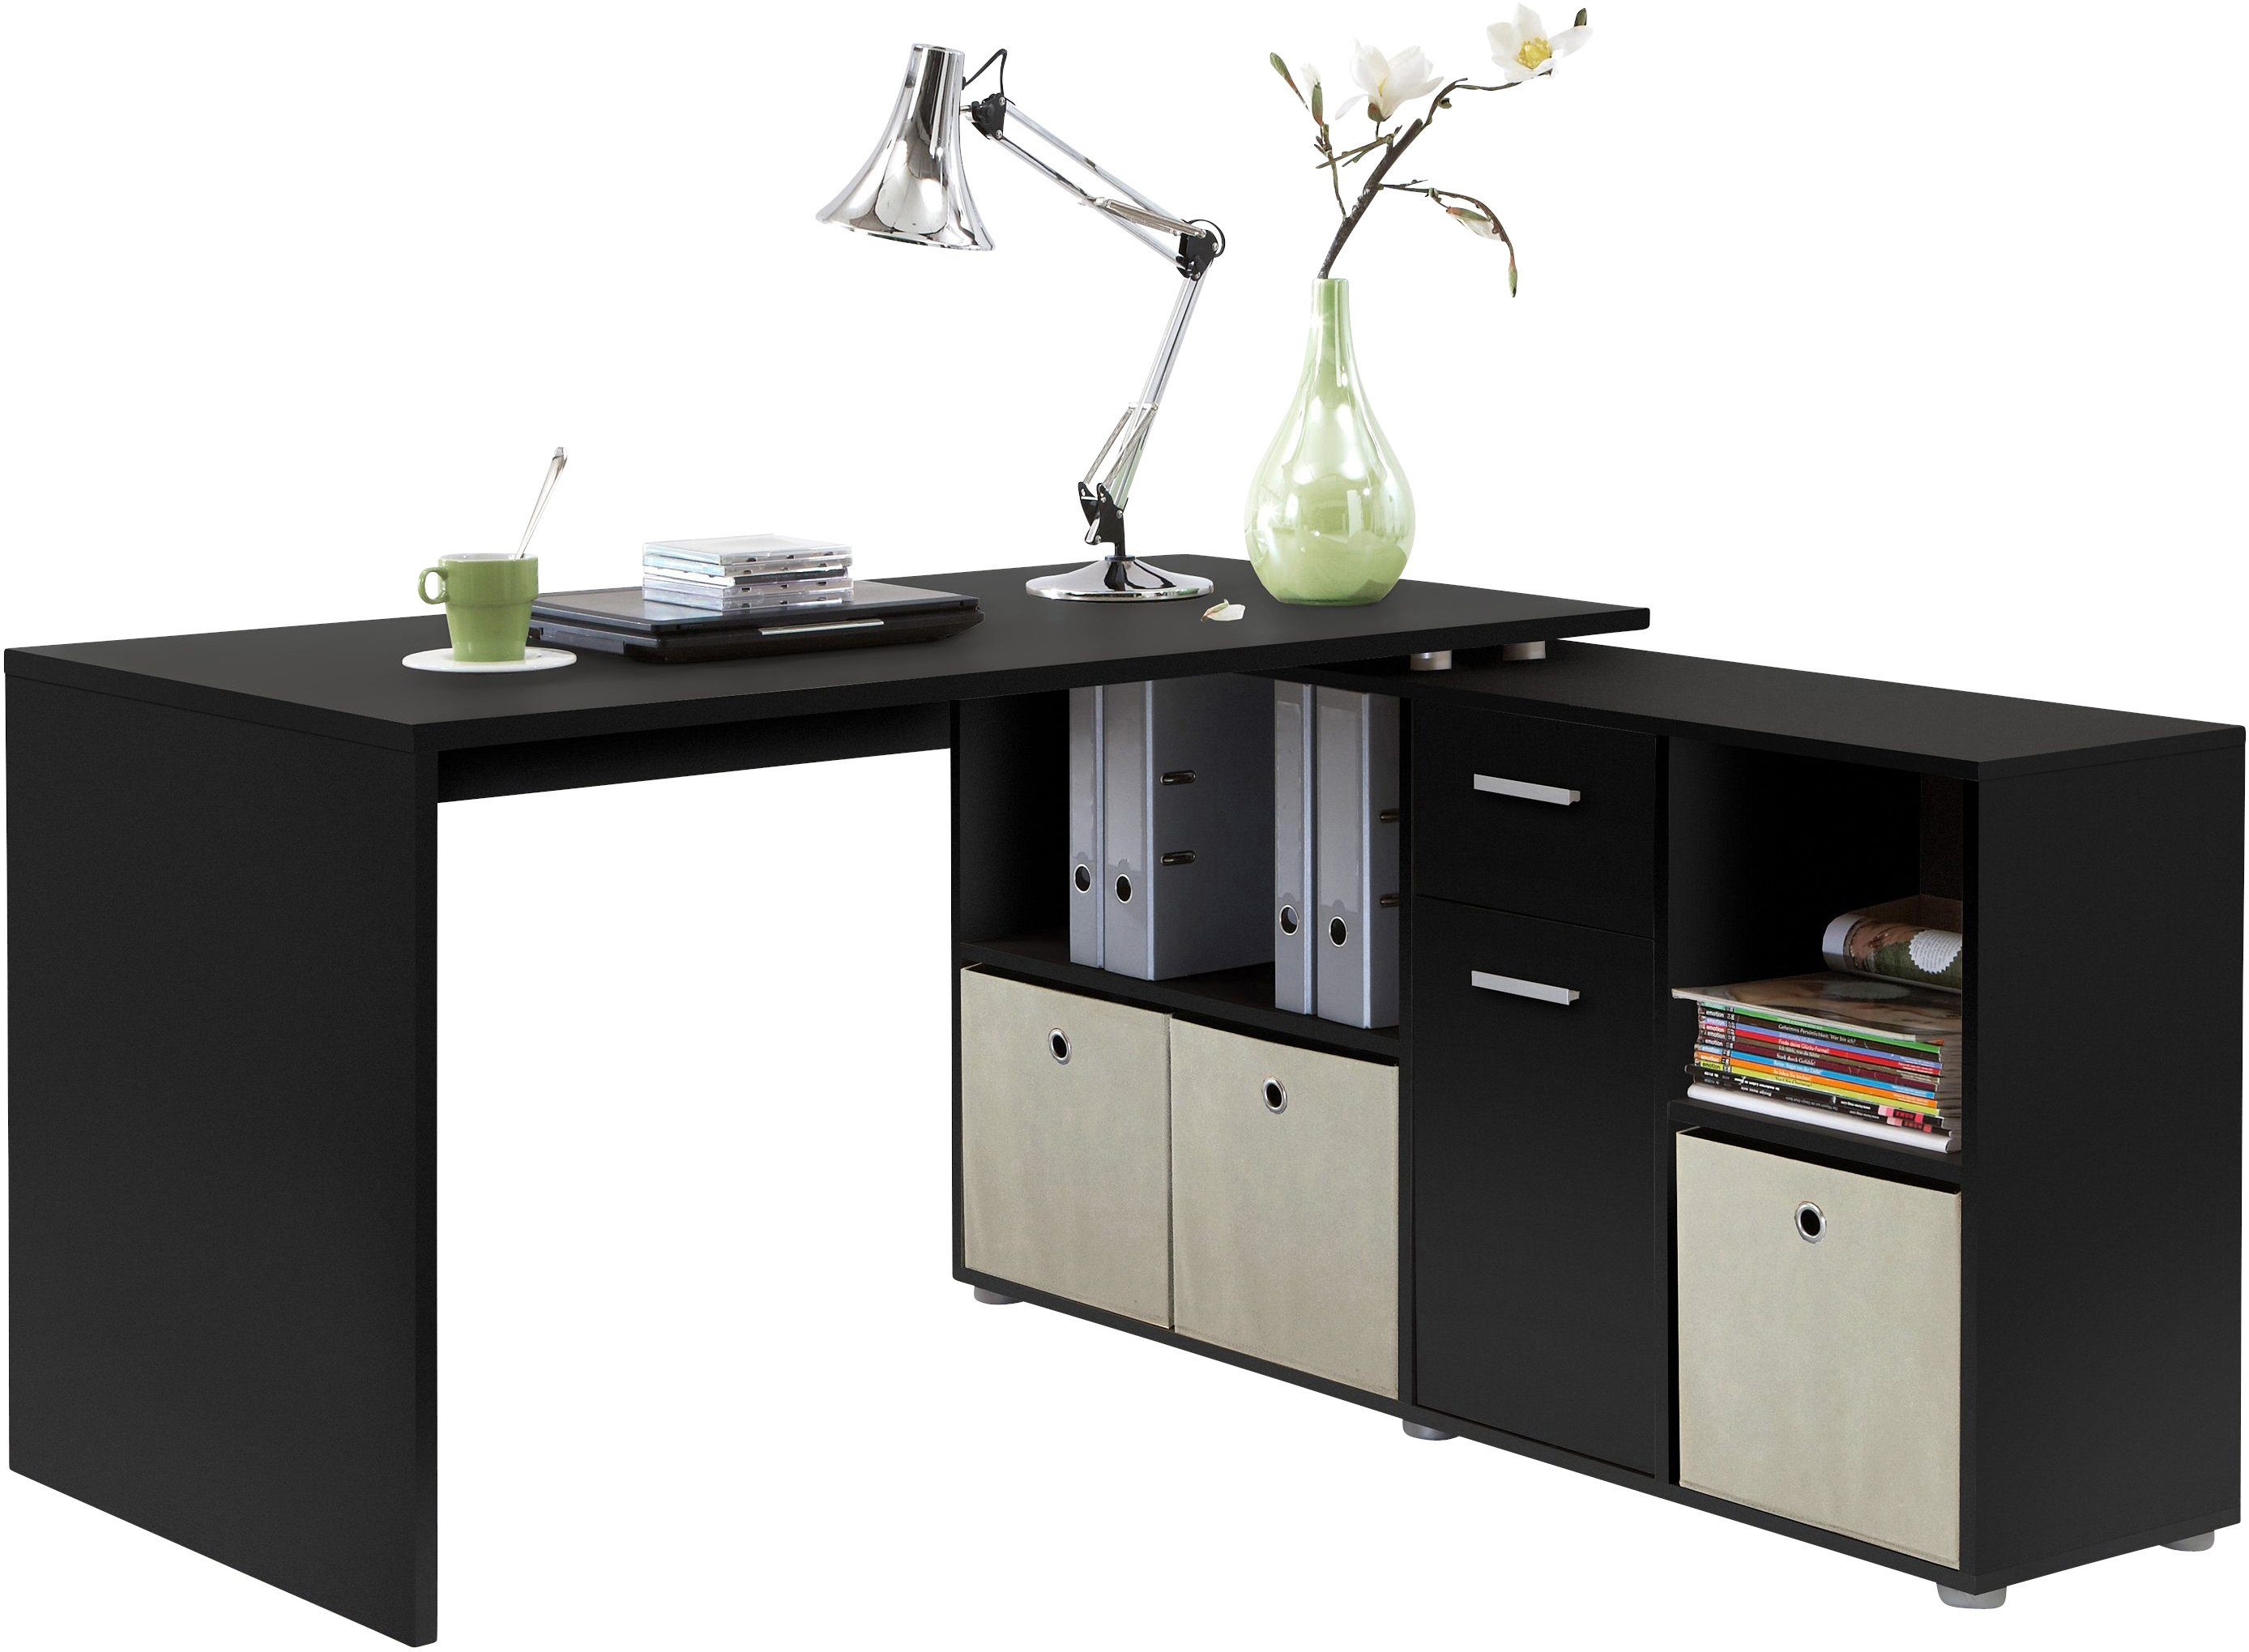 FMD Eckschreibtisch Lex, Schreibtisch / Sideboard, drehbar, Breite 136 / 205 cm, Made in Germany schwarz | Eckschreibtische